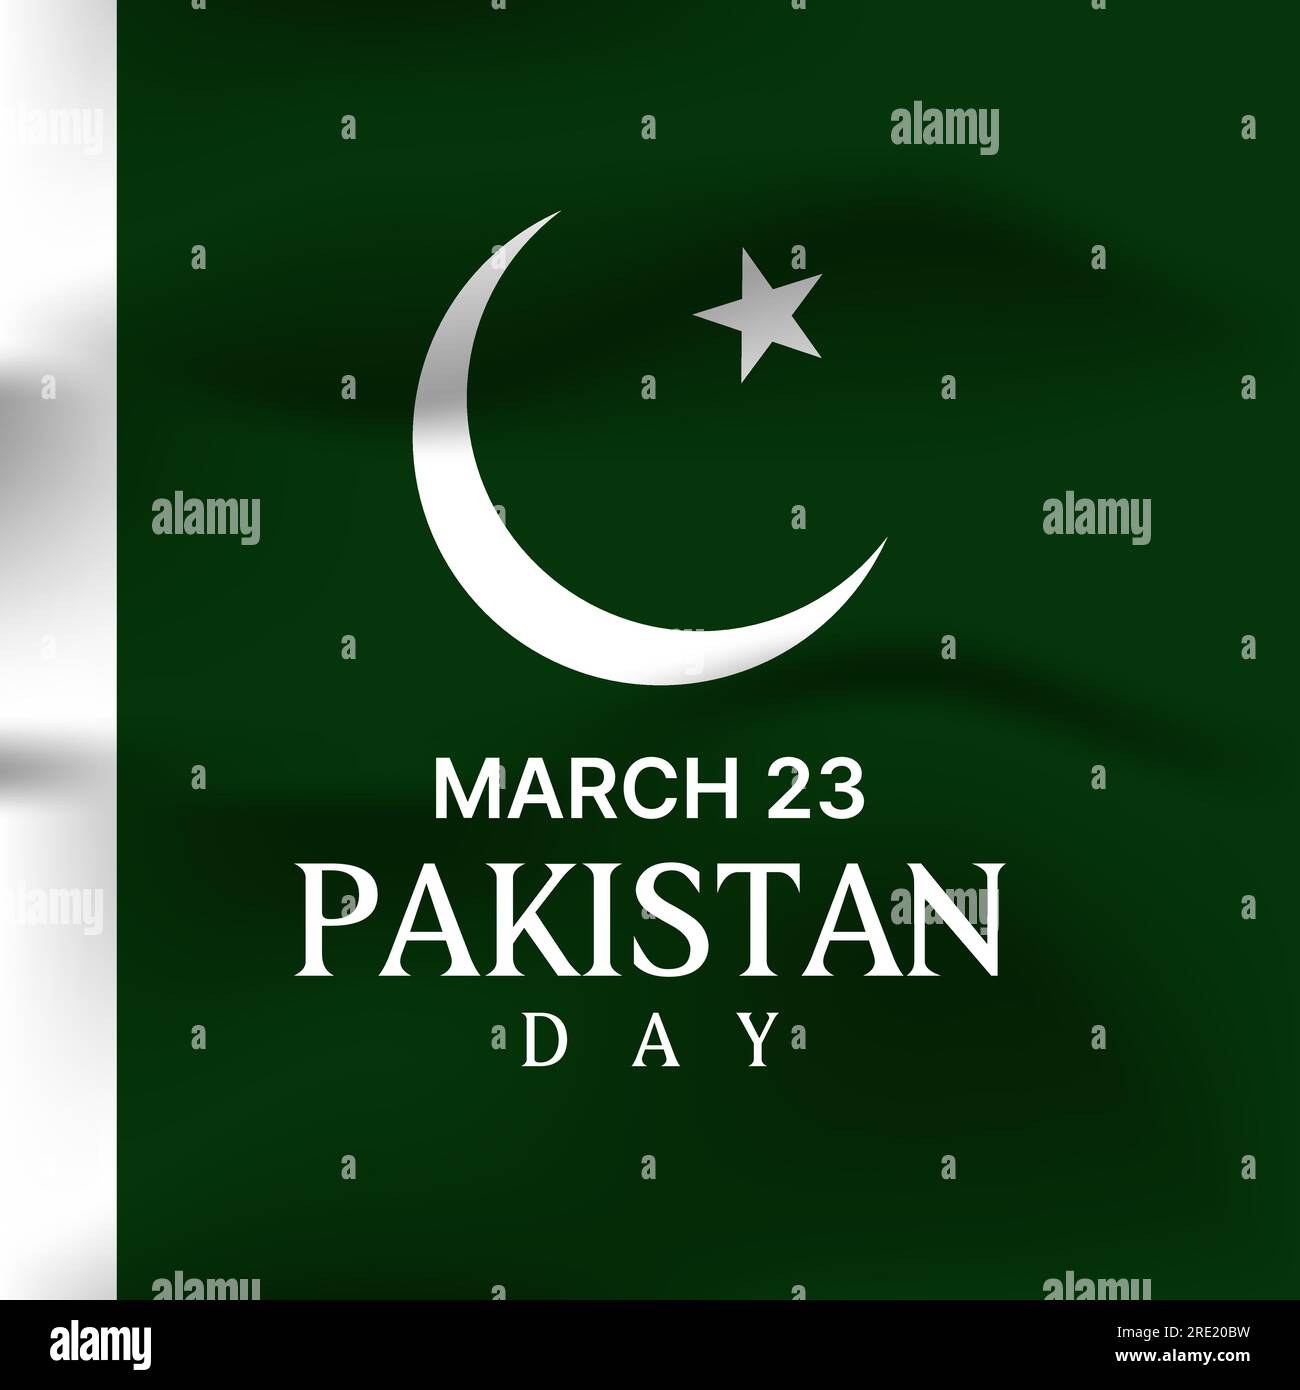 célébration pakistan day avec fond de drapeau blanc vert. illustration vectorielle Illustration de Vecteur